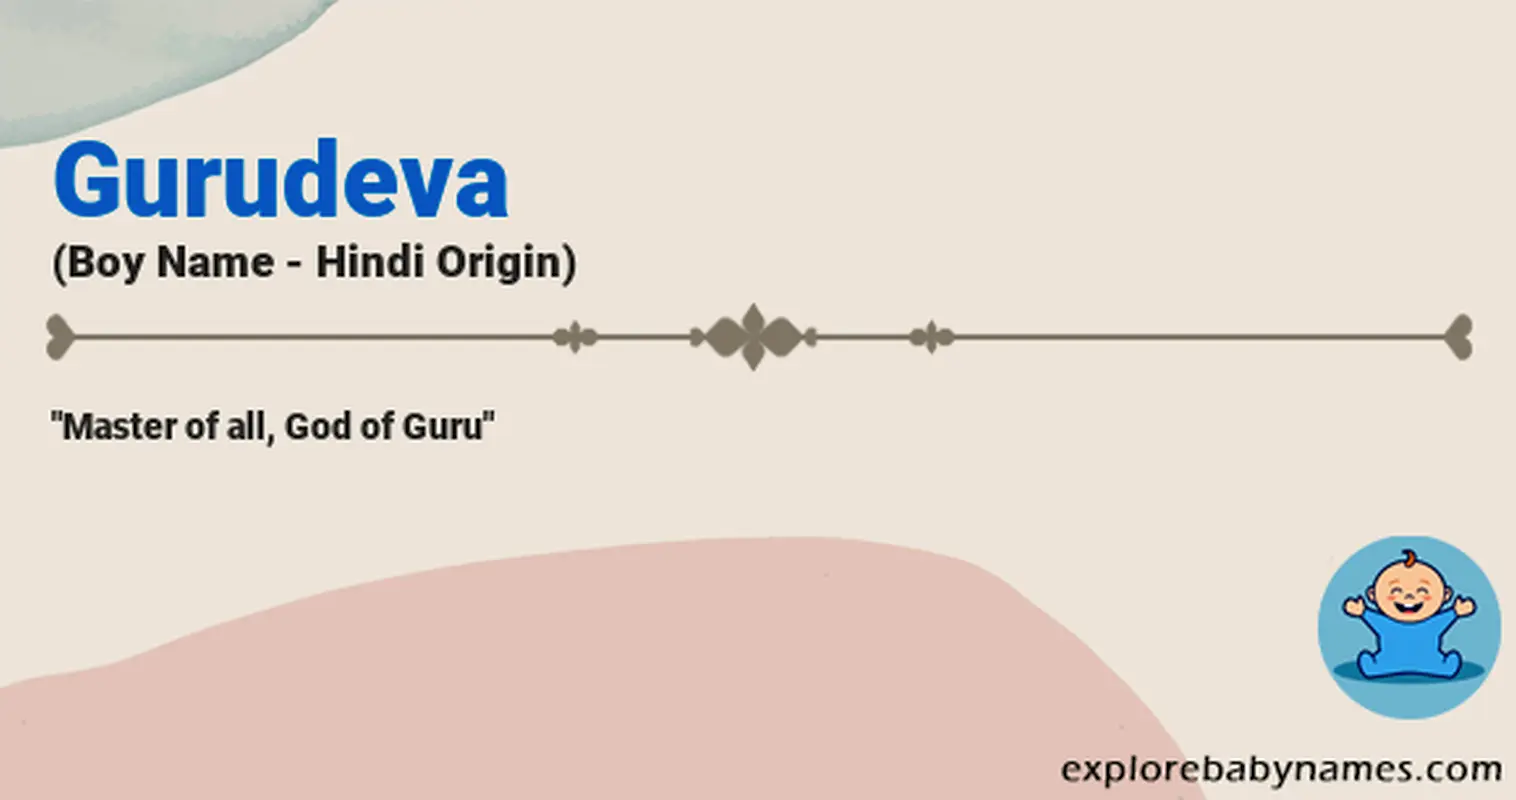 Meaning of Gurudeva